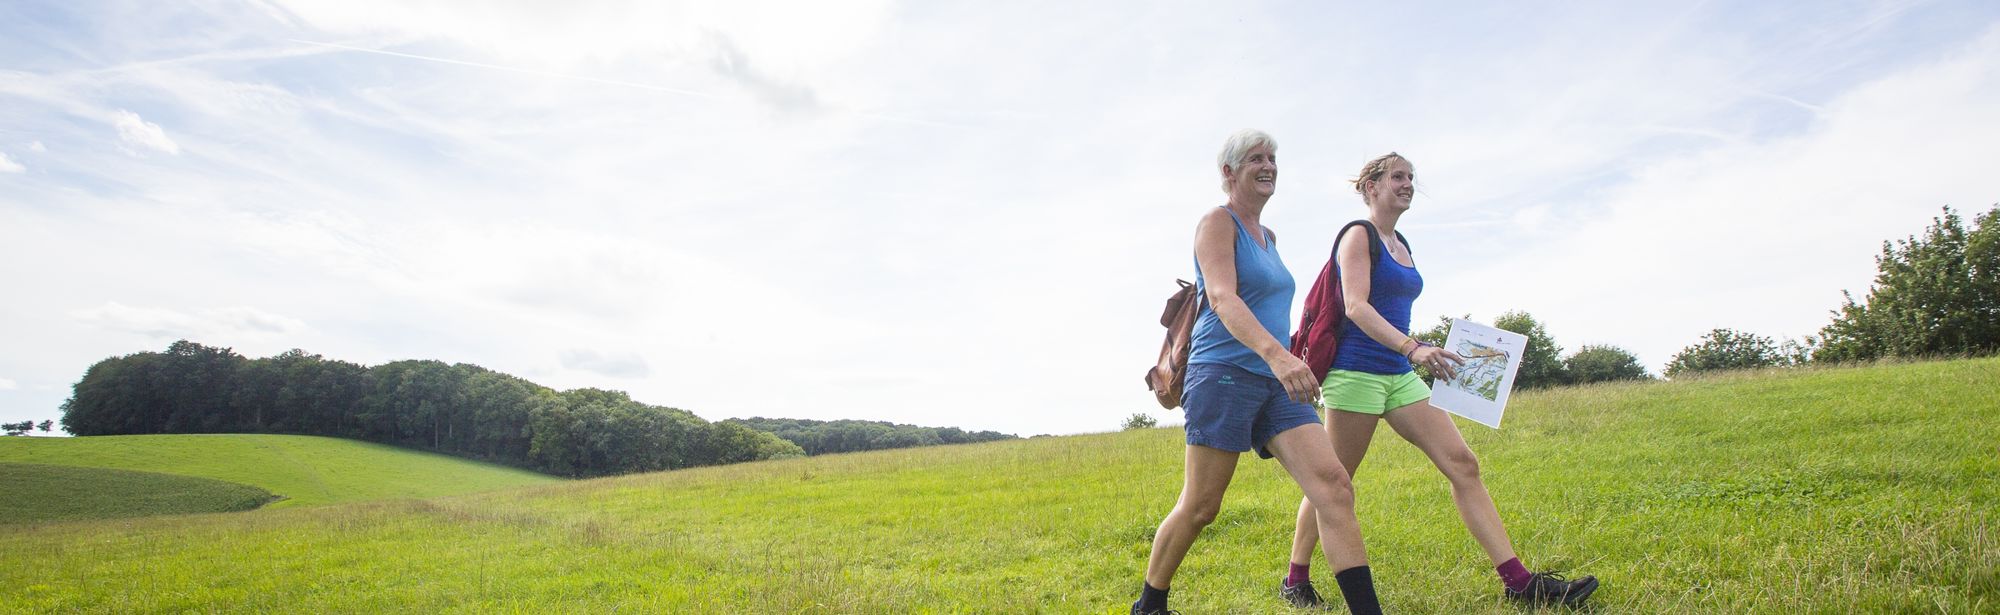 Twee vrouwen wandelen lachend door het landschap van Zuid-Limburg op een lichtbewolkte dag